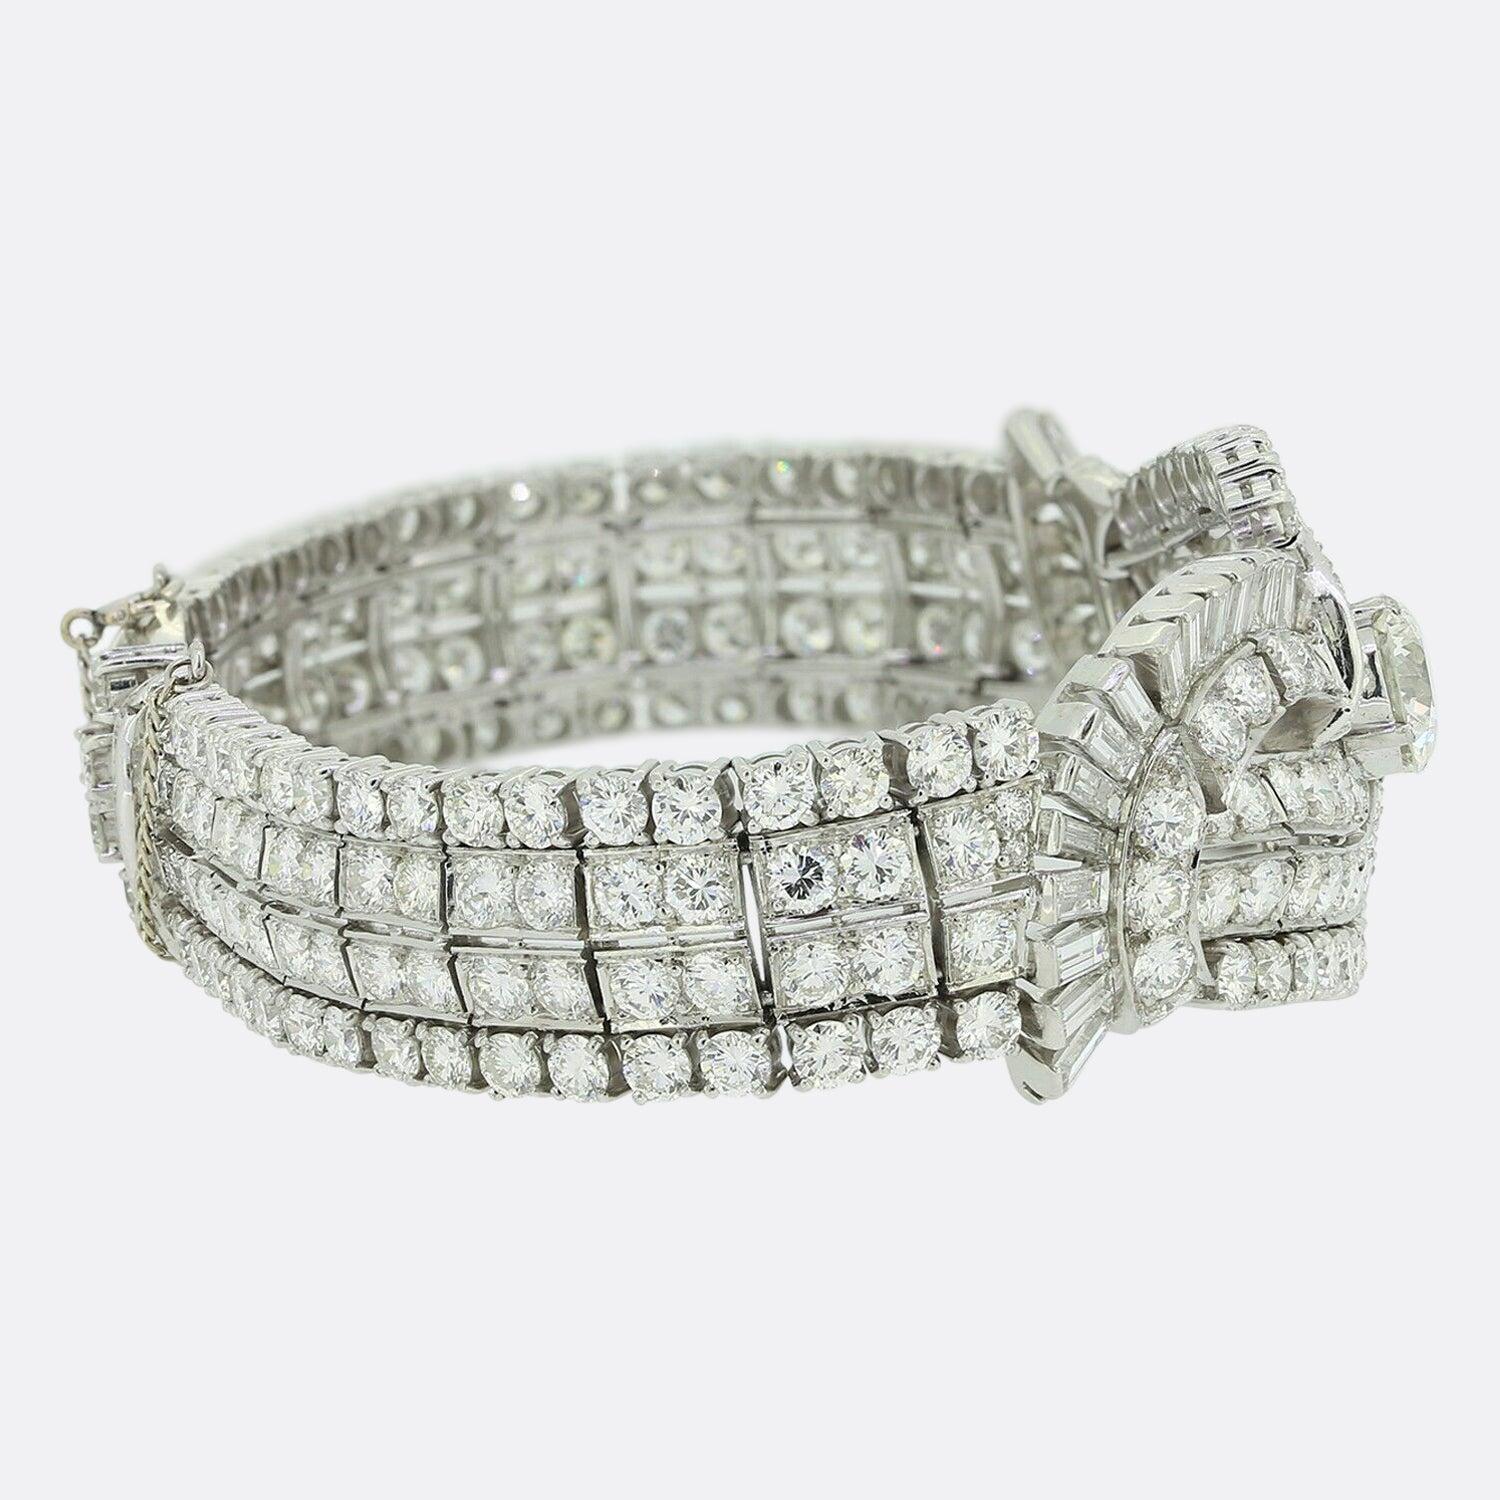 Il s'agit d'un très beau bracelet datant des années 1970. Le bracelet abrite une vaste gamme de diamants, dont le principal est une superbe taille européenne ancienne de 2,40 carats. Le reste des diamants est un mélange de diamants ronds de taille